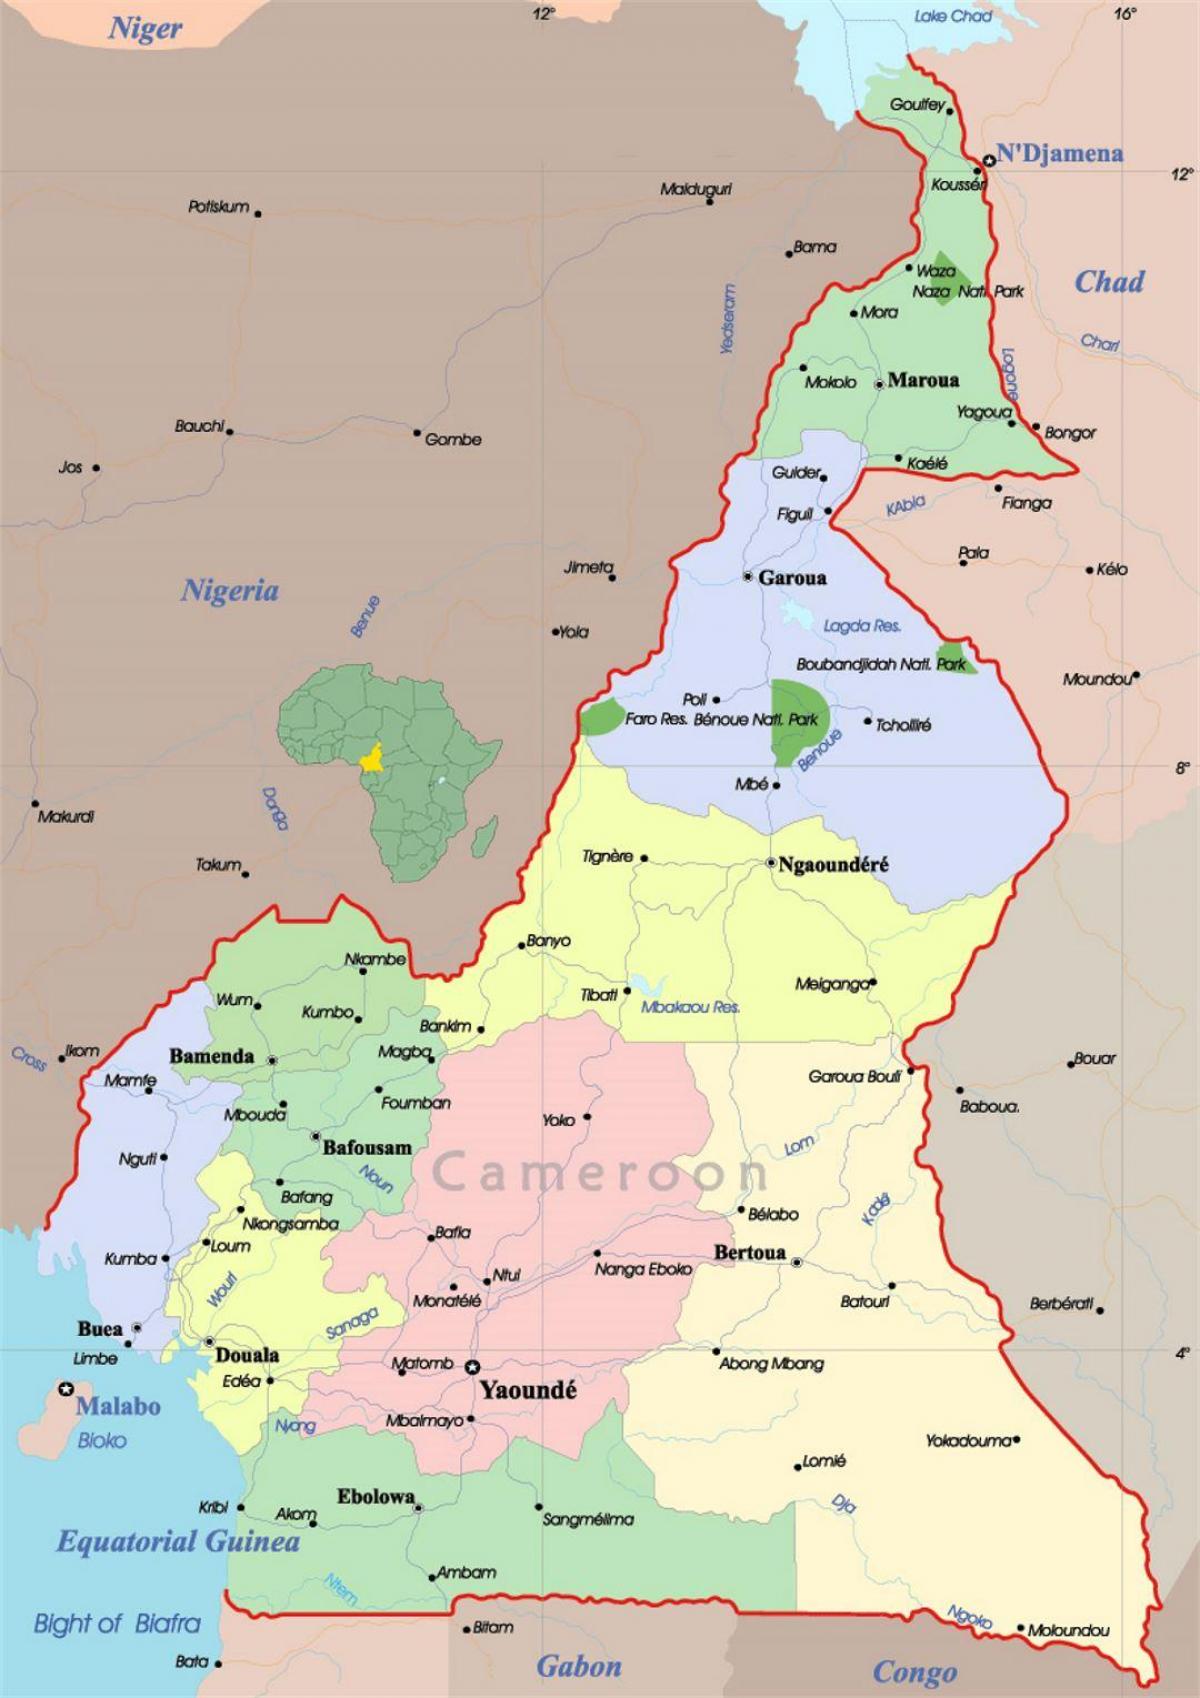 Camarões mapa com cidades